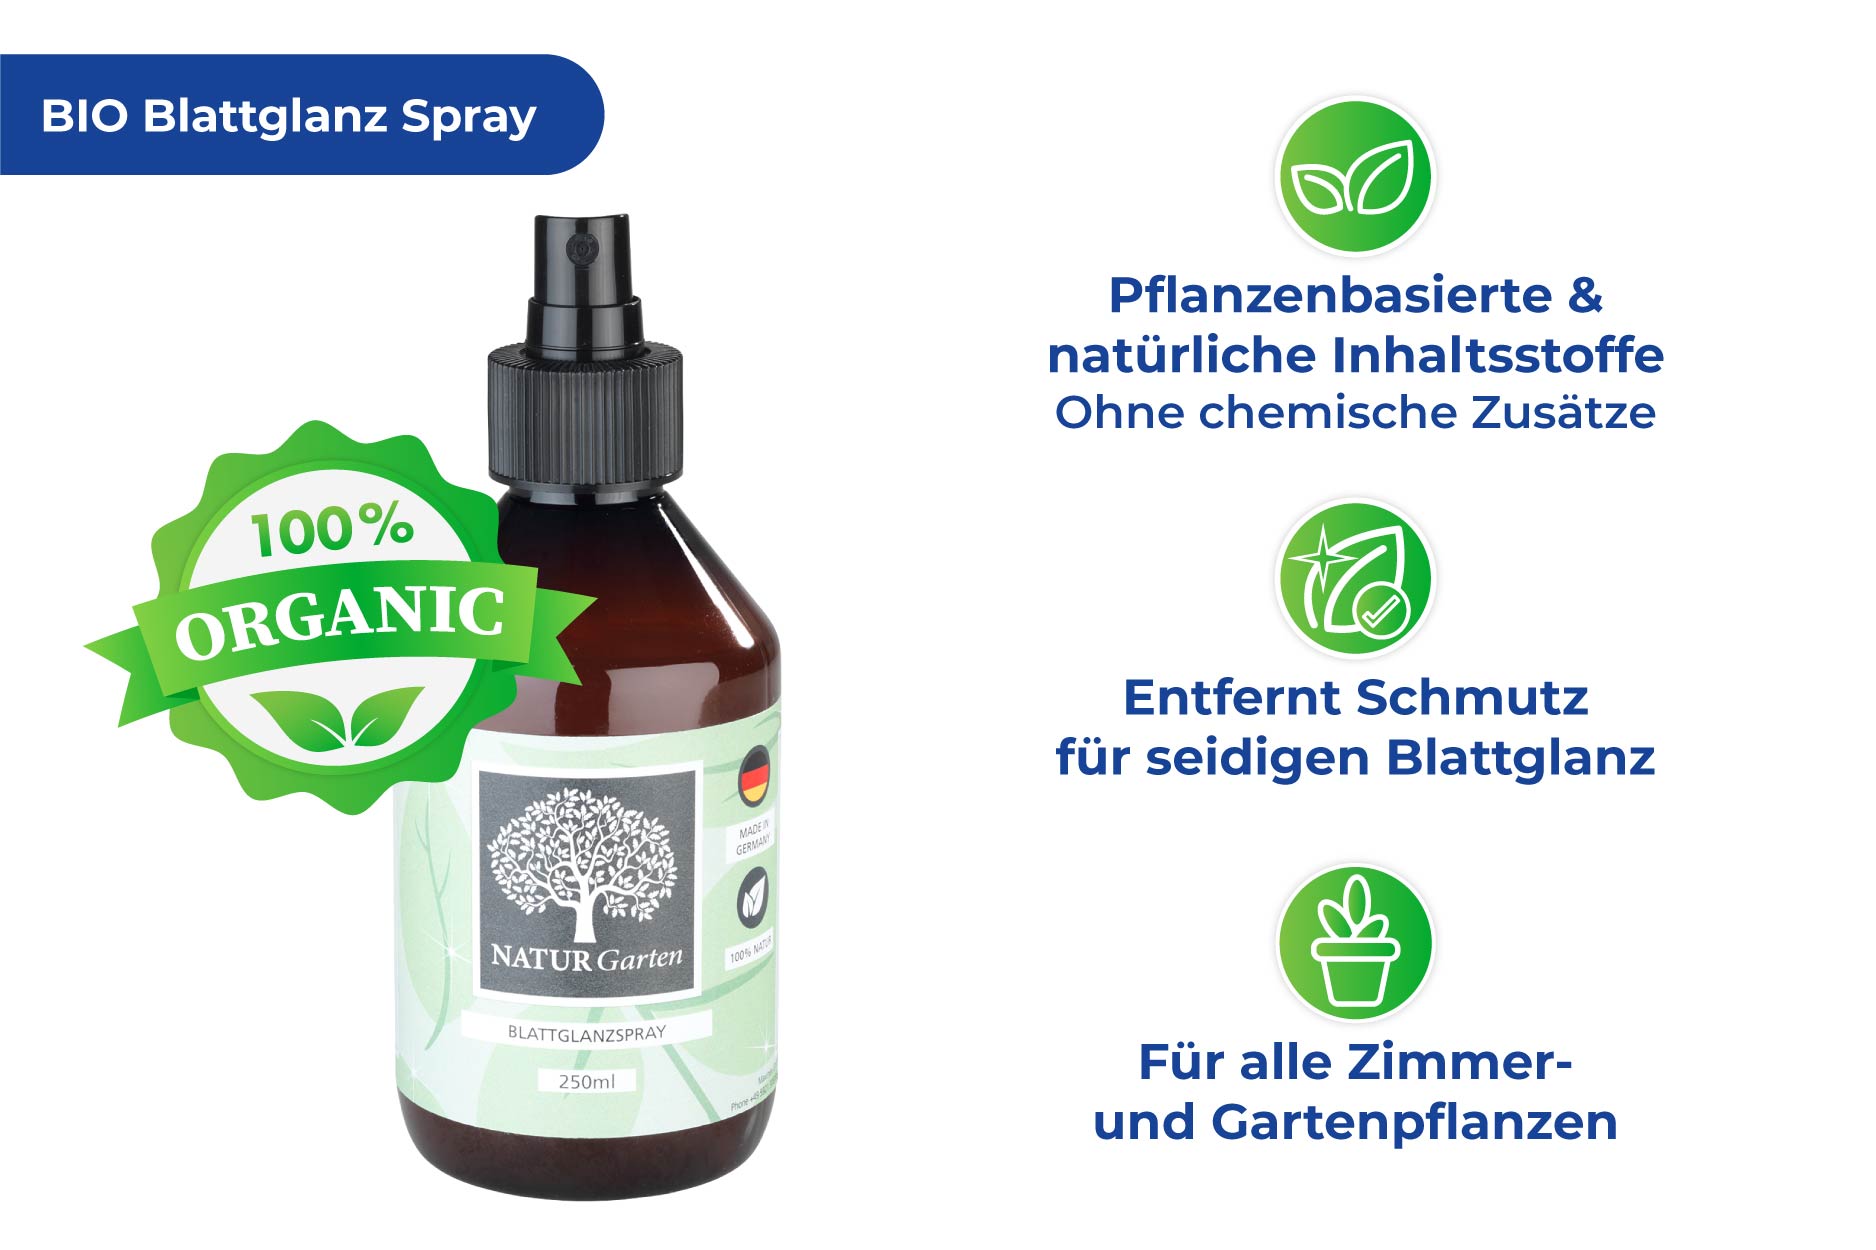 BIO Blattglanz Spray, 250 ml